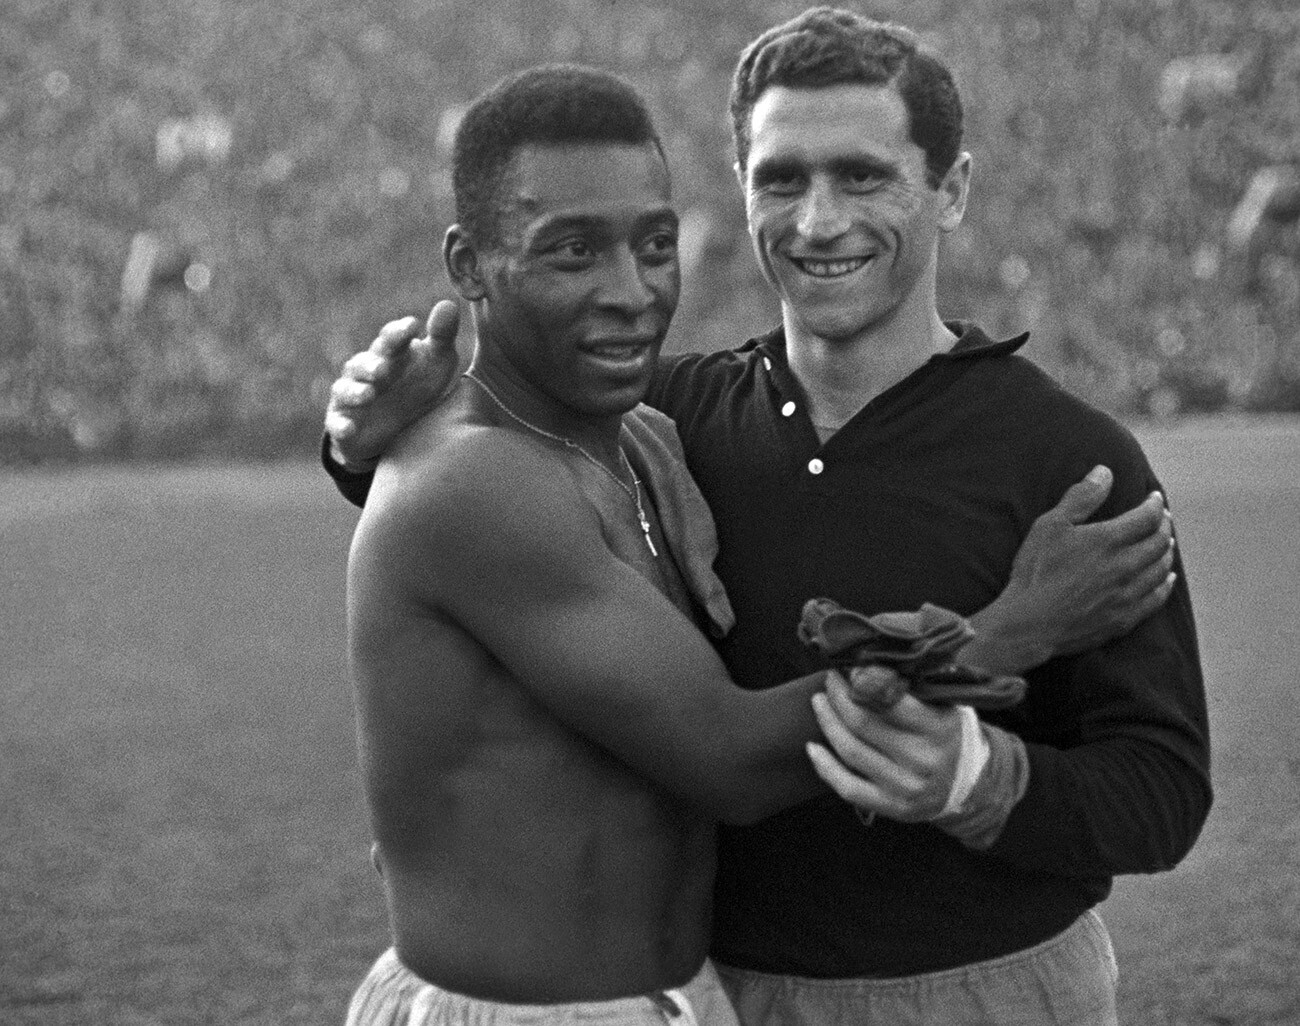 Pelé und der sowjetische Torwart Ansor Kawasaschwili nach dem Freundschaftsspiel in Moskau, 1965.
